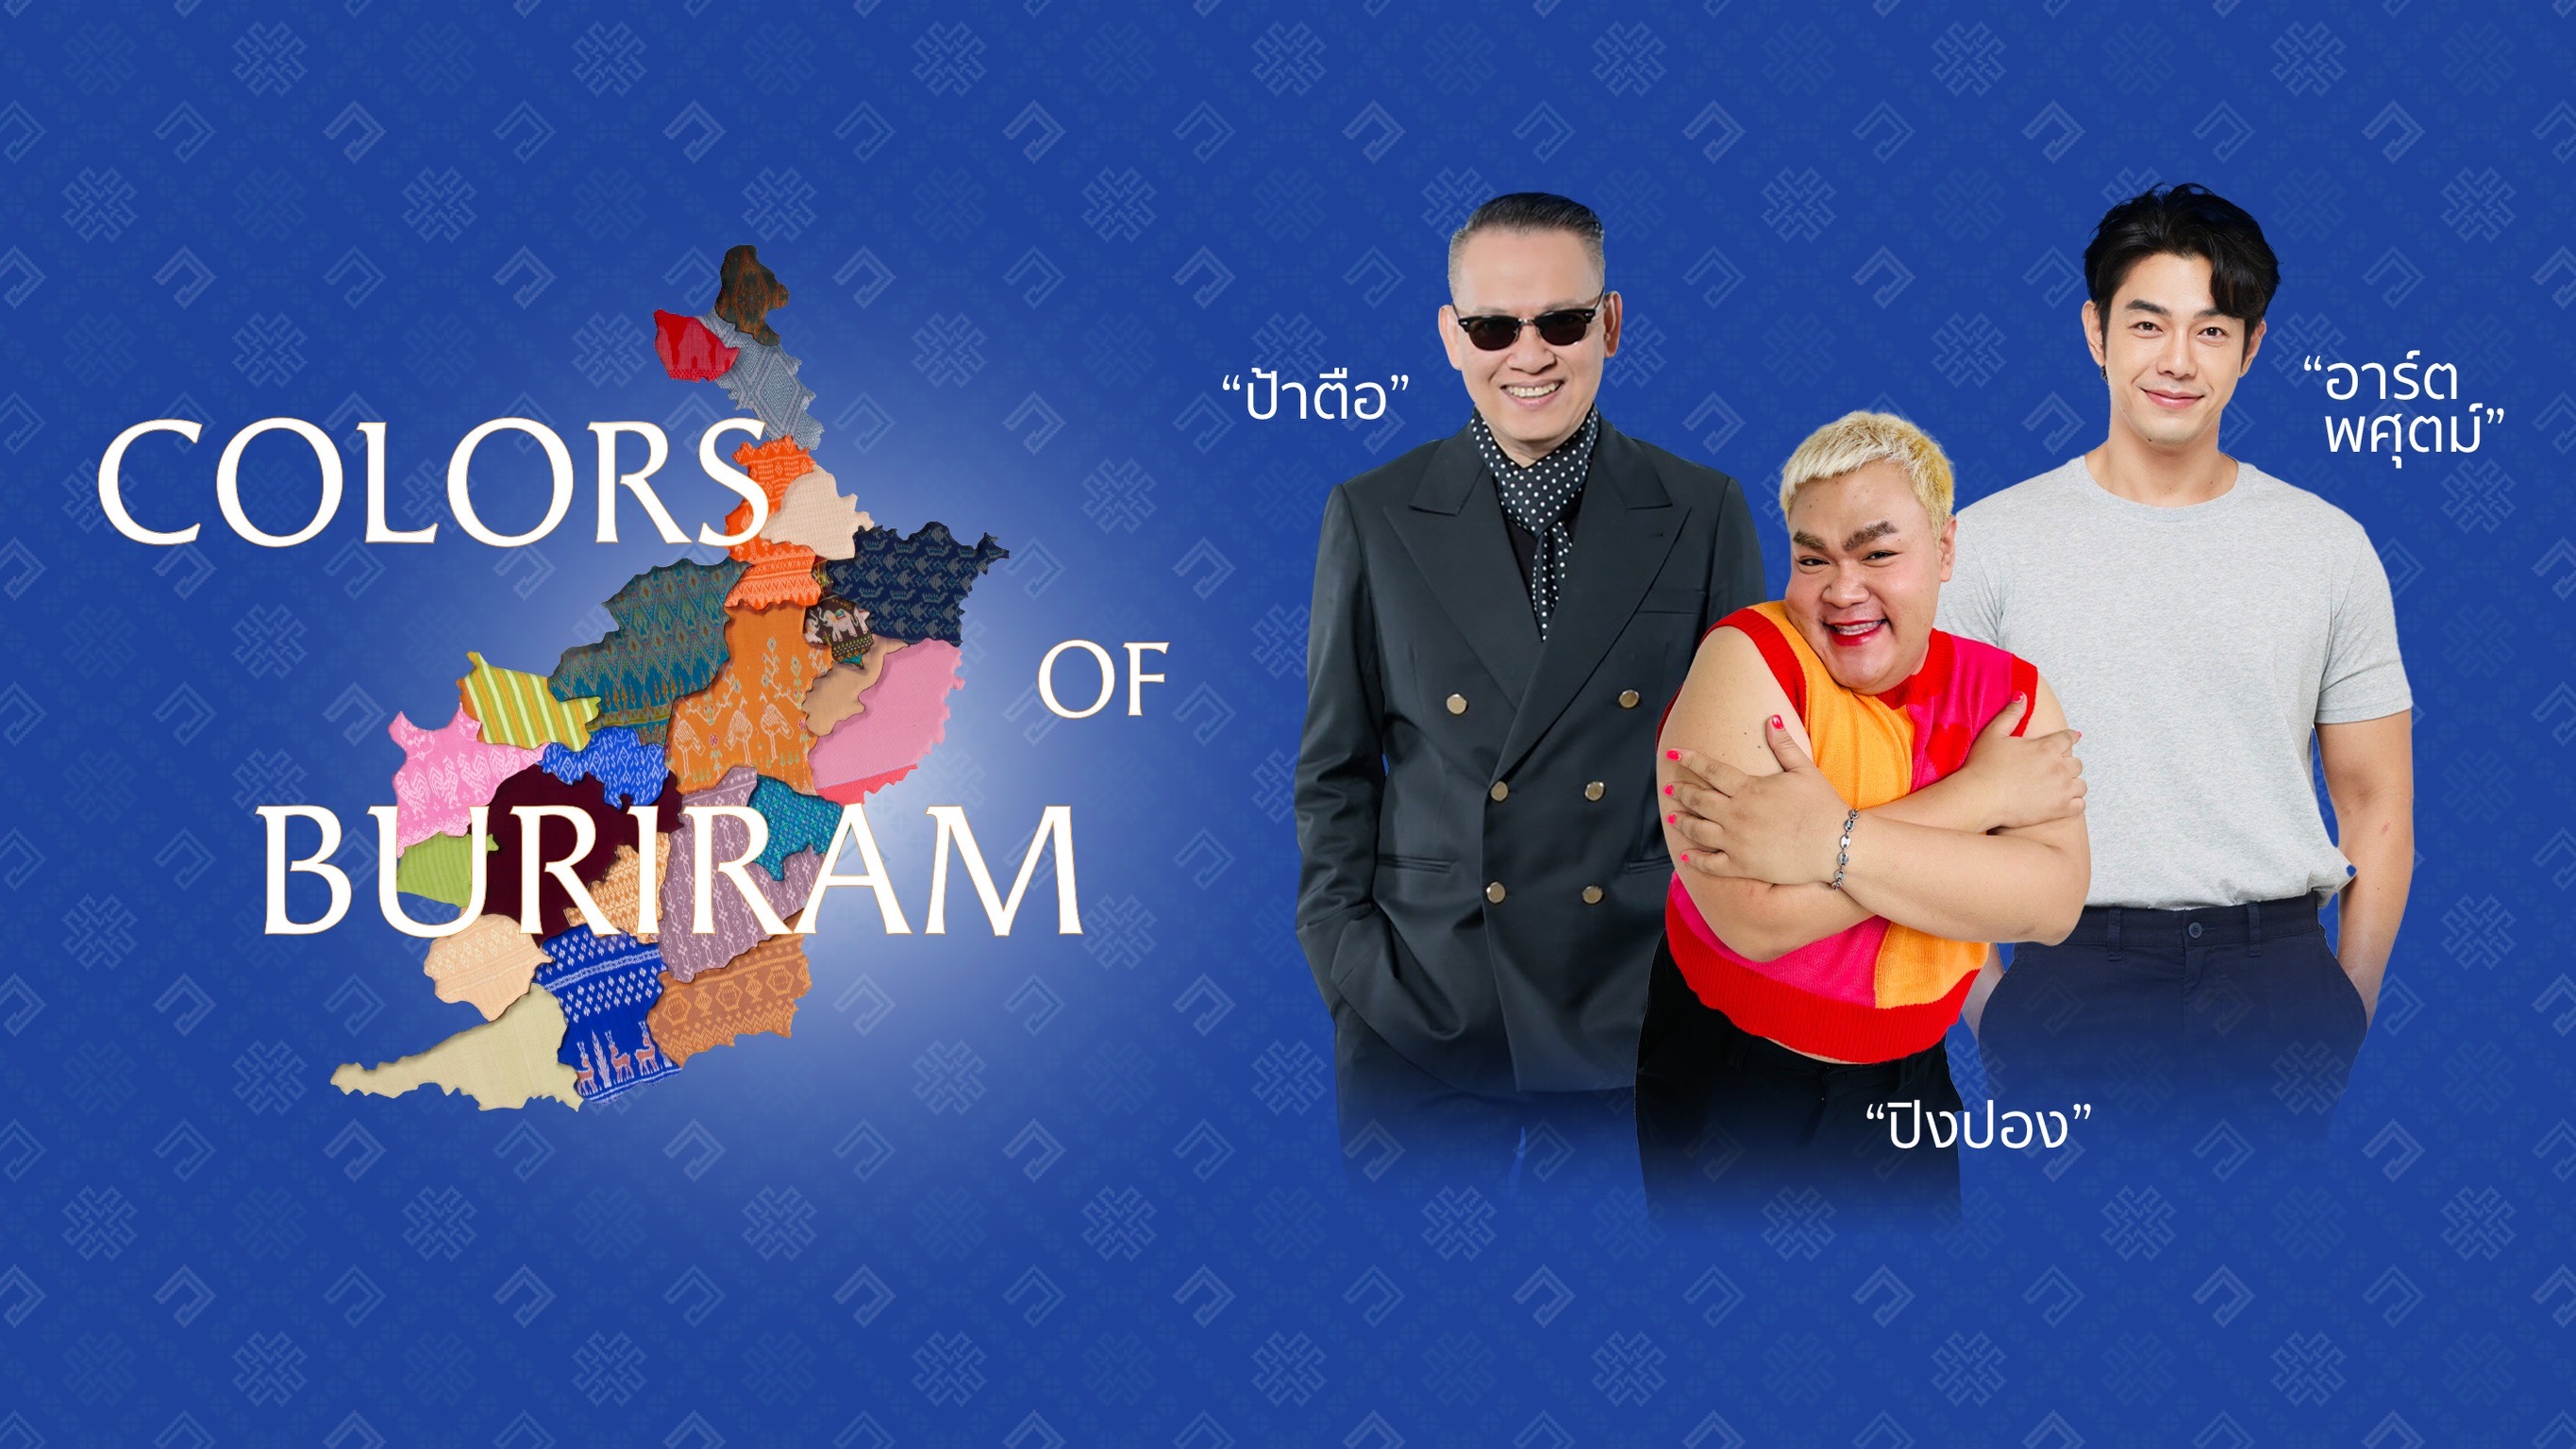 ยิ่งใหญ่กว่าที่เคย! ขอเชิญชมงาน Colors of Buriram อลังการไปกับเส้นทางสายไหมบุรีรัมย์ ชม-ช้อป ที่สุดของงานผ้าไหมแห่งปี